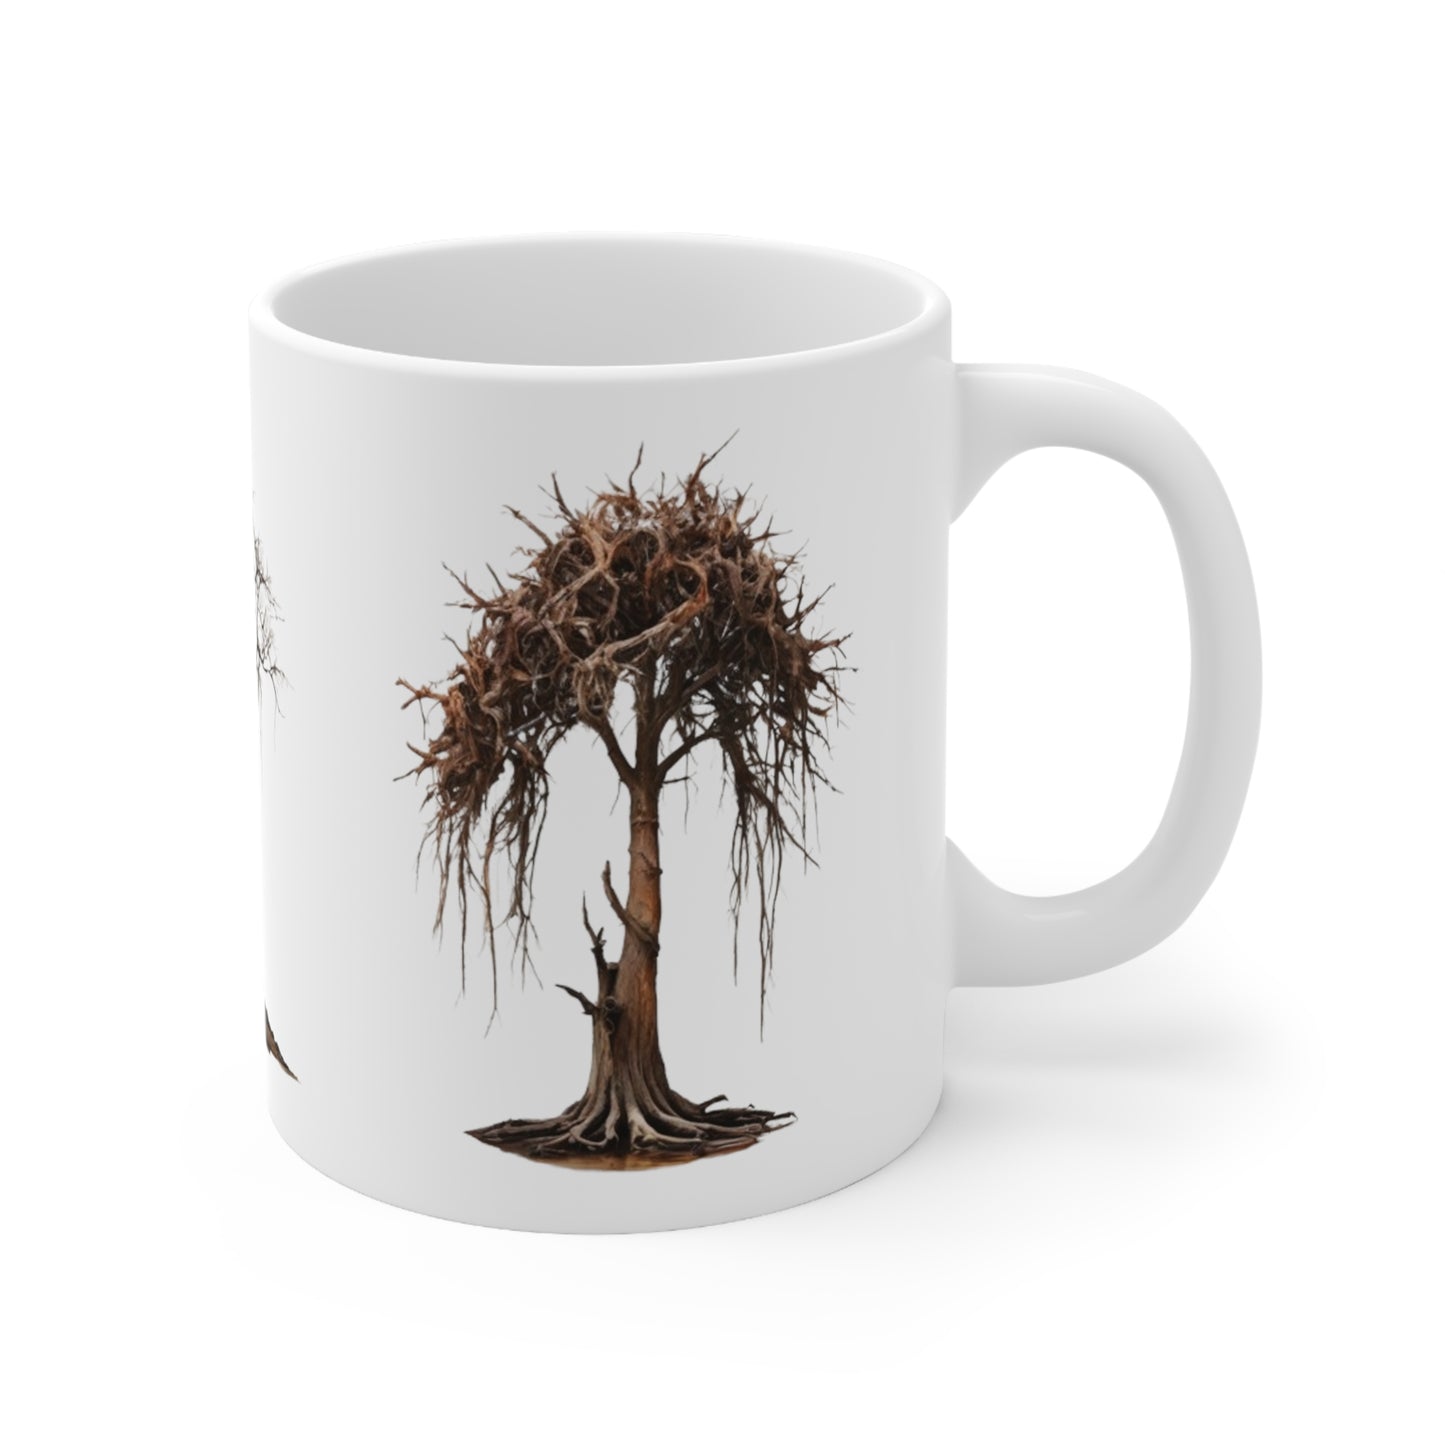 Dying Trees Mug - Ceramic Coffee Mug 11oz